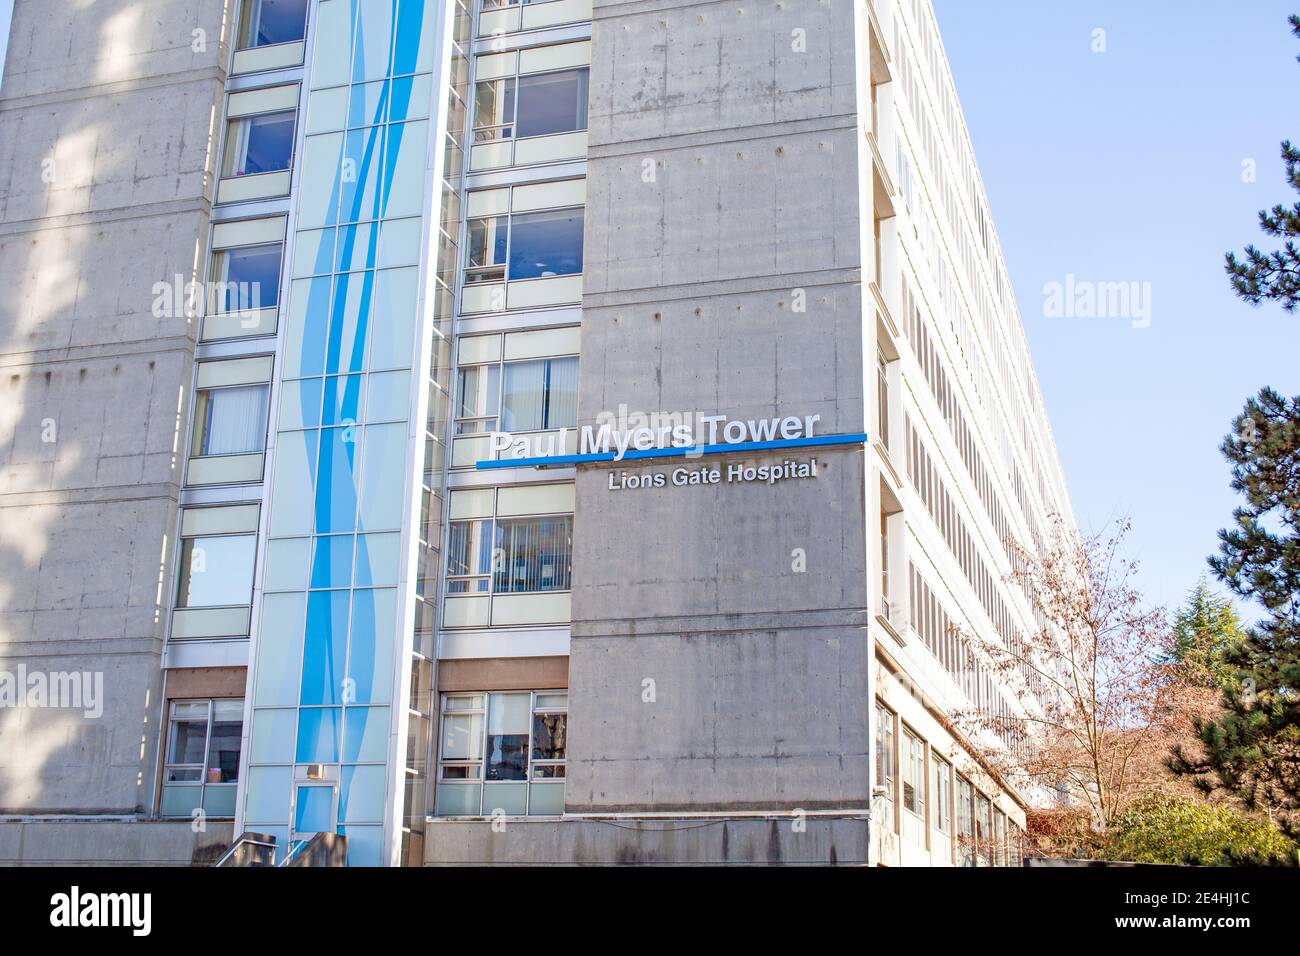 North Vancouver, Colombie-Britannique, Canada - 01-23-2021: La tour Paul Myers à l'hôpital Lions Gate, qui abrite la tour aiguë sud Banque D'Images